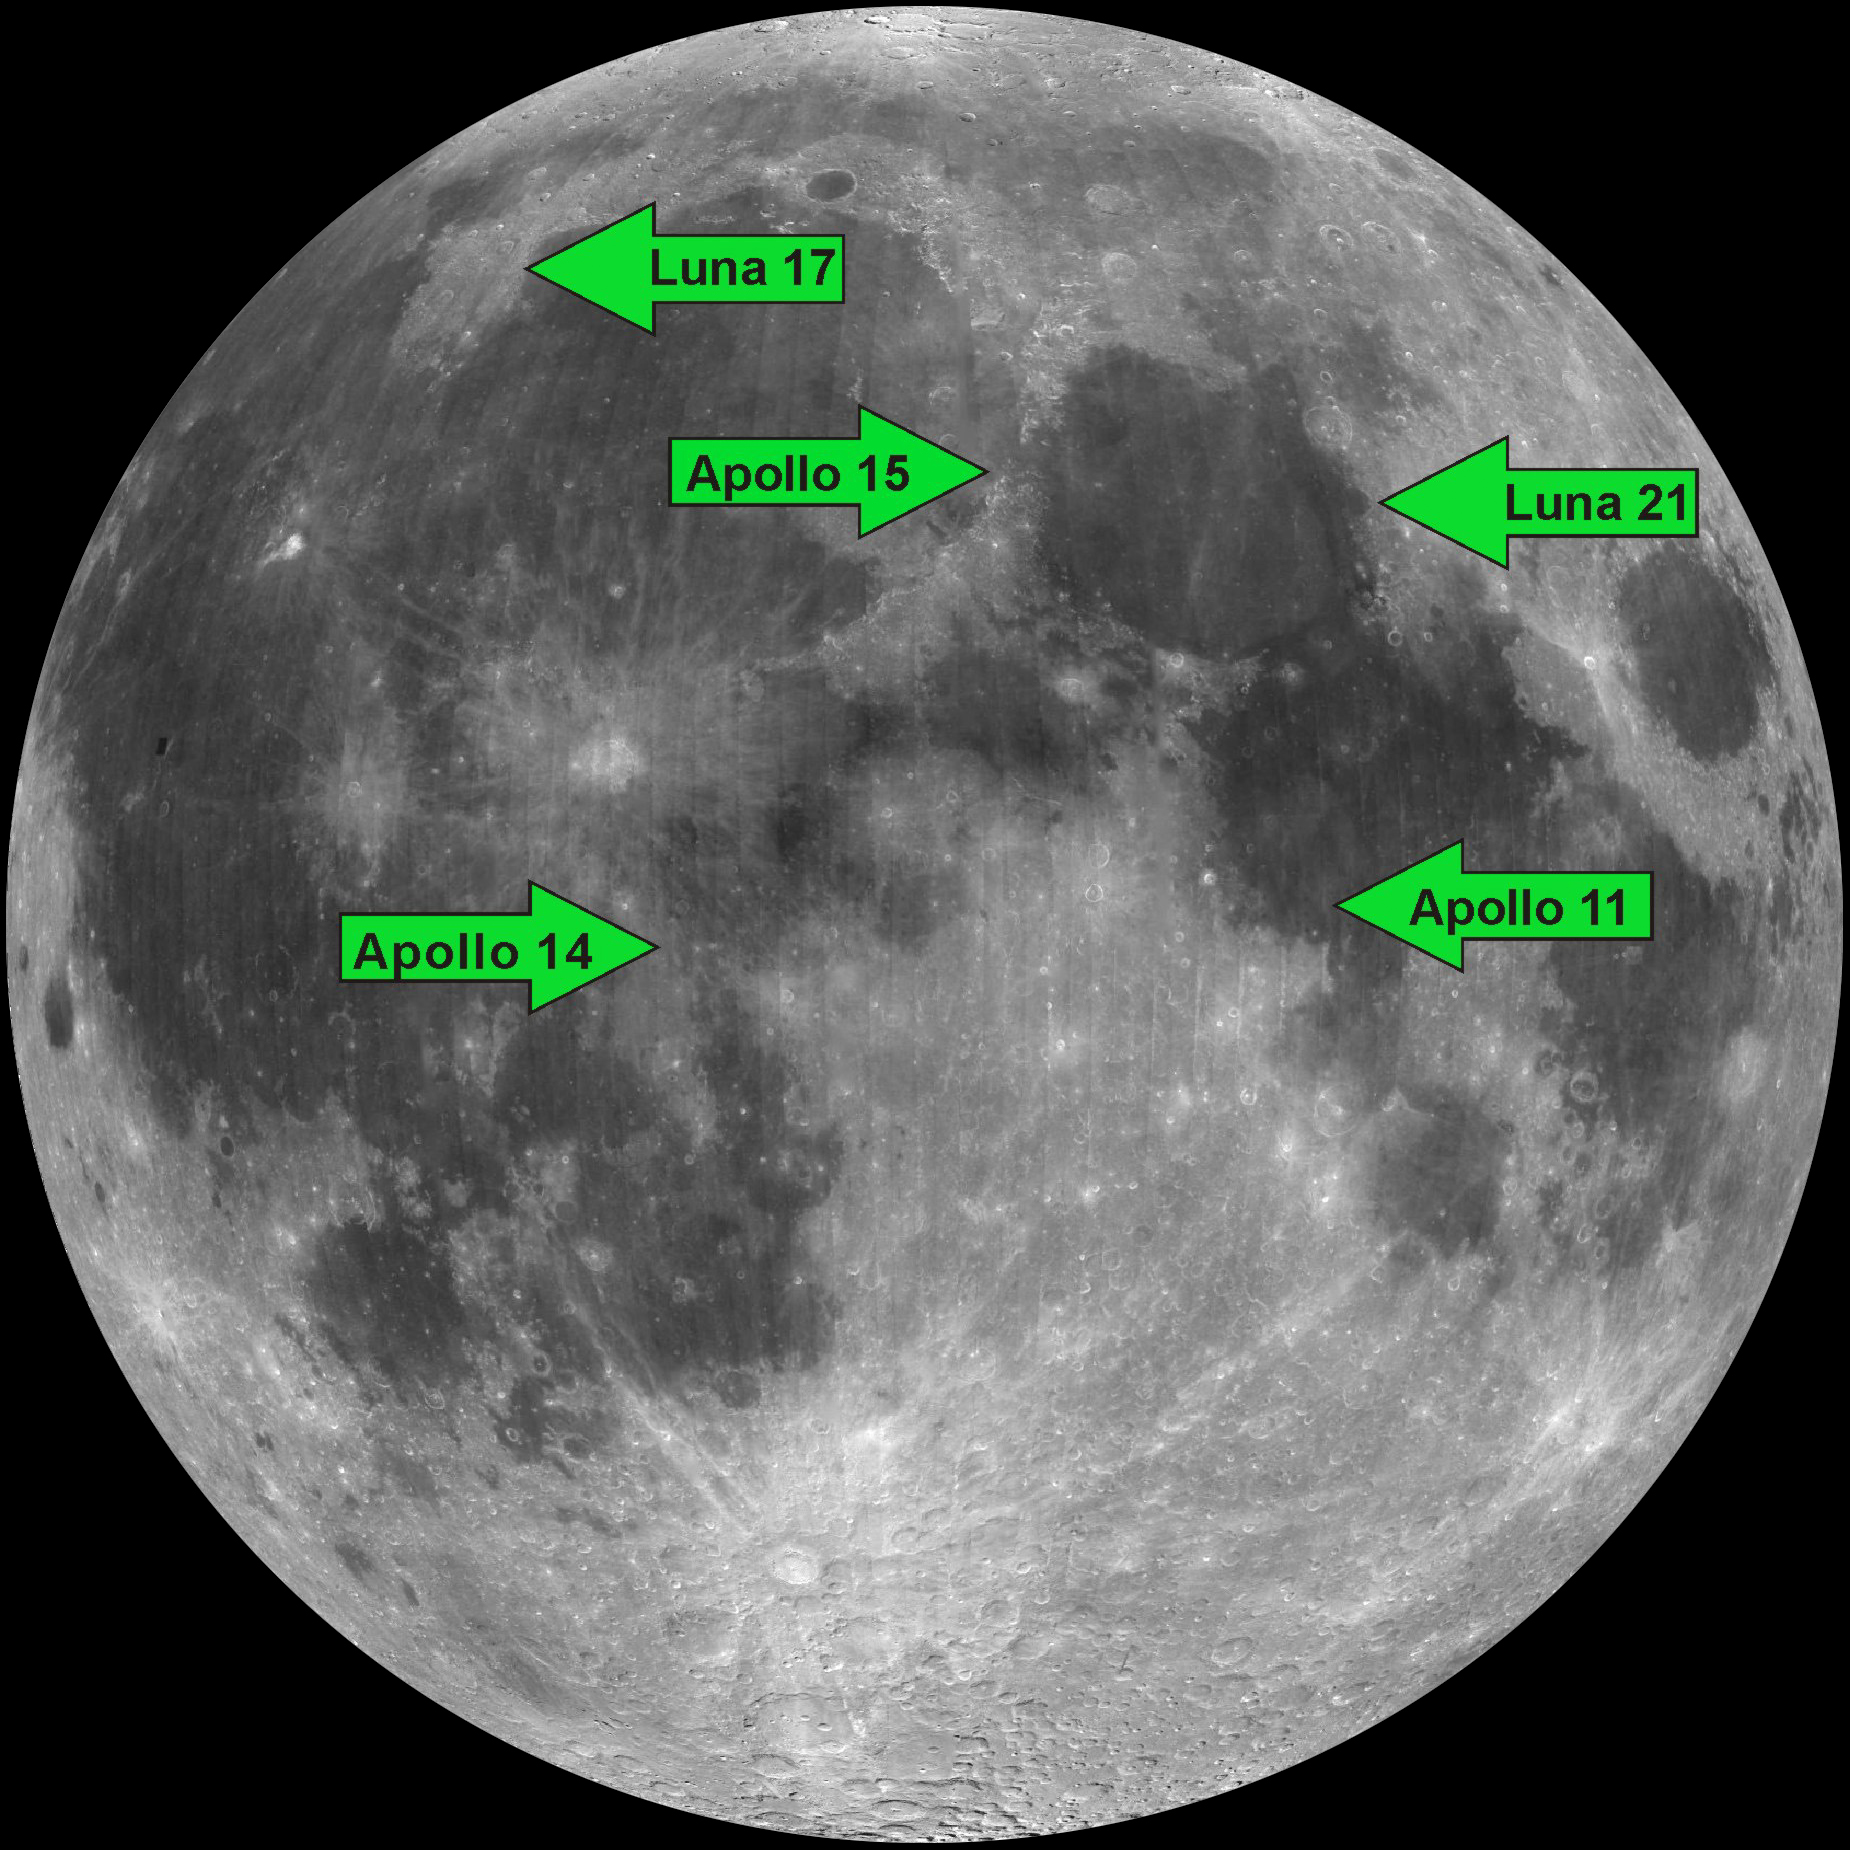 Расстояние до поверхности луны